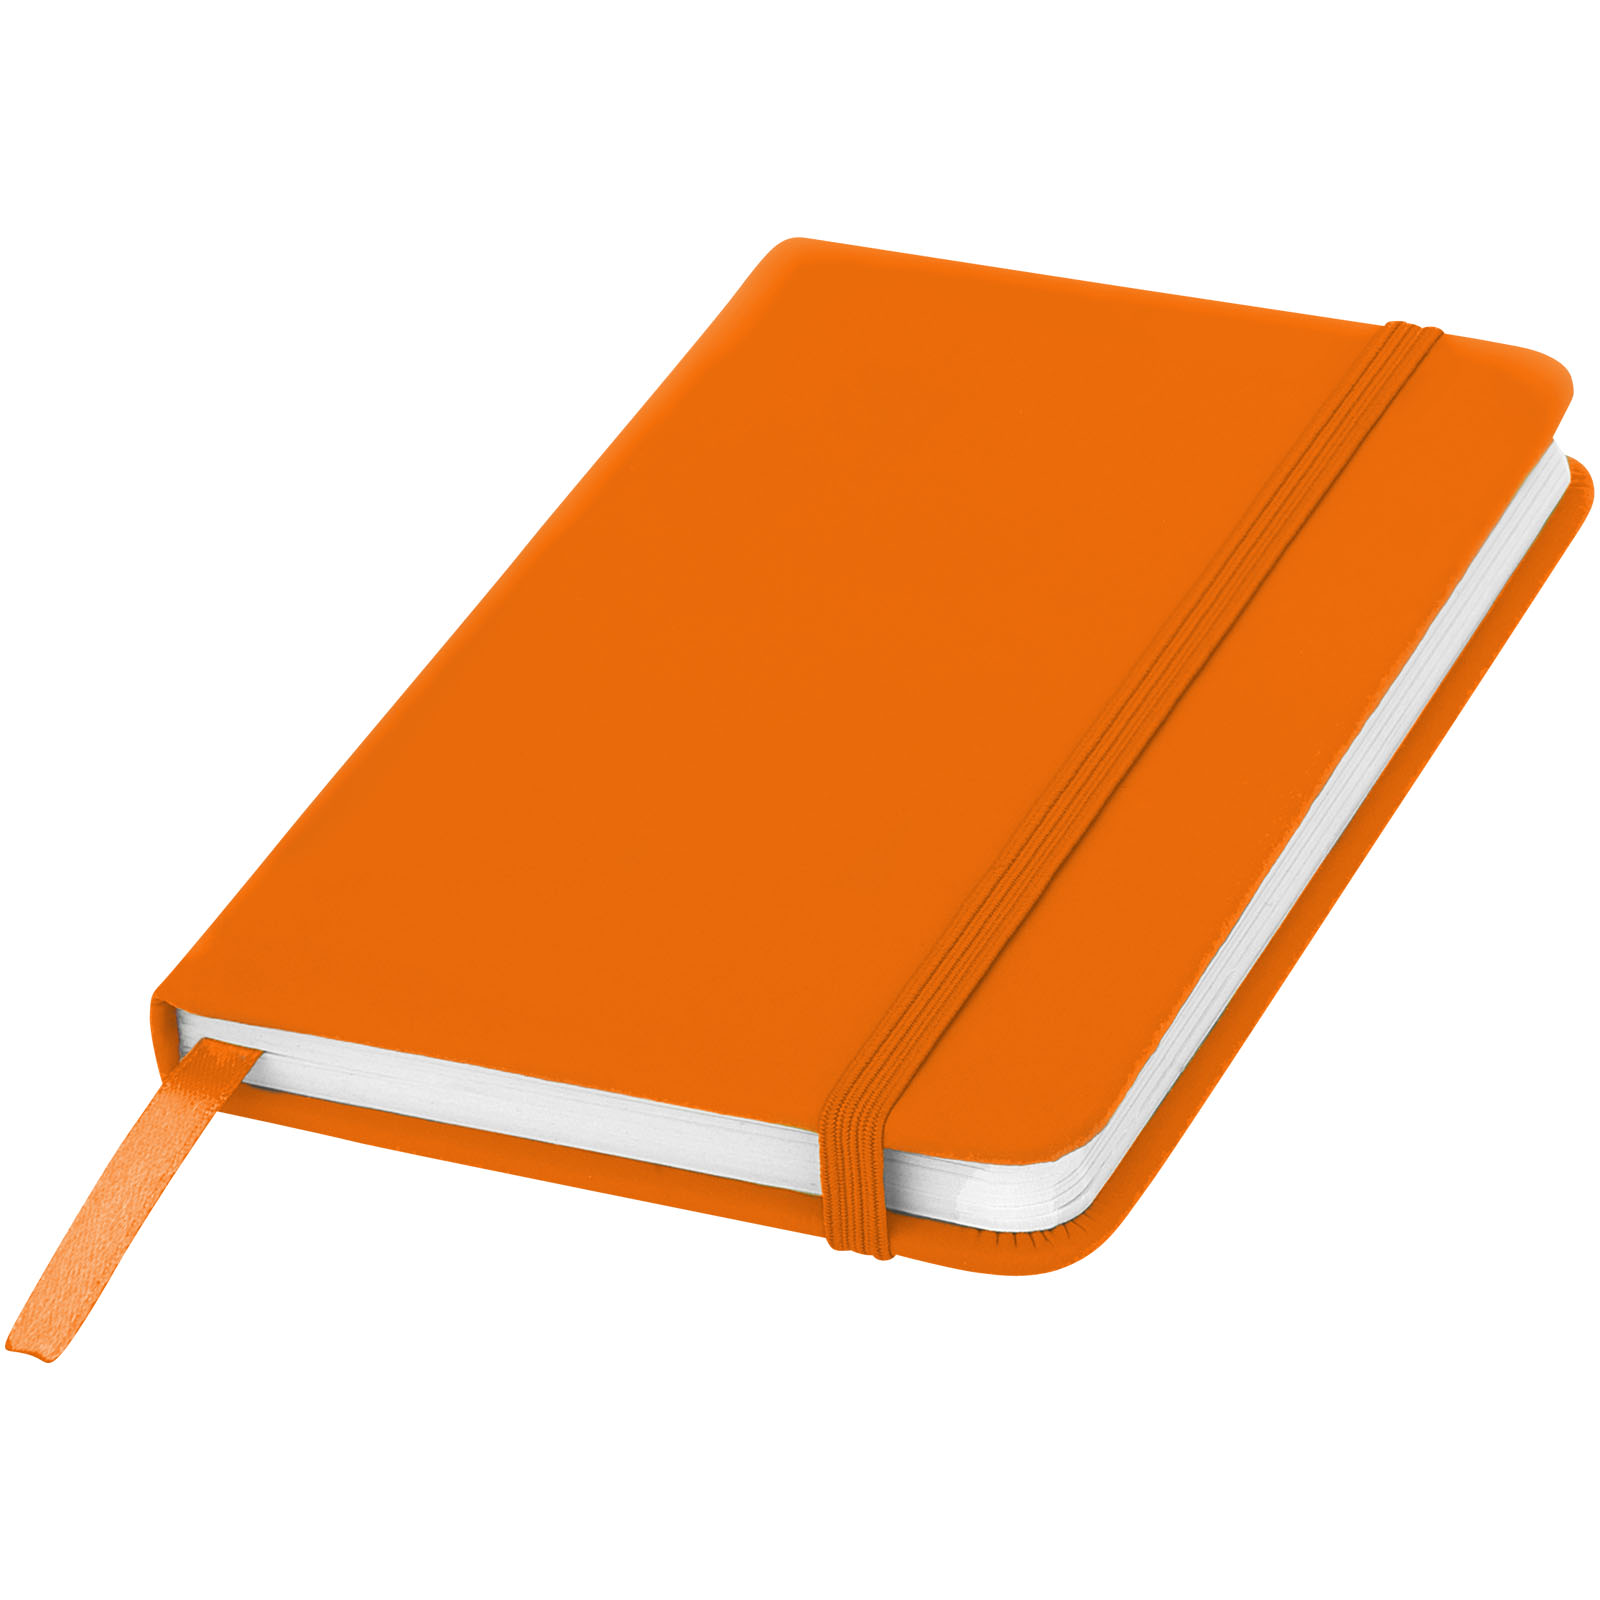 Taccuino con elastico e copertina soft touch in formato A6 SPECTRUM 106905 - Arancio 